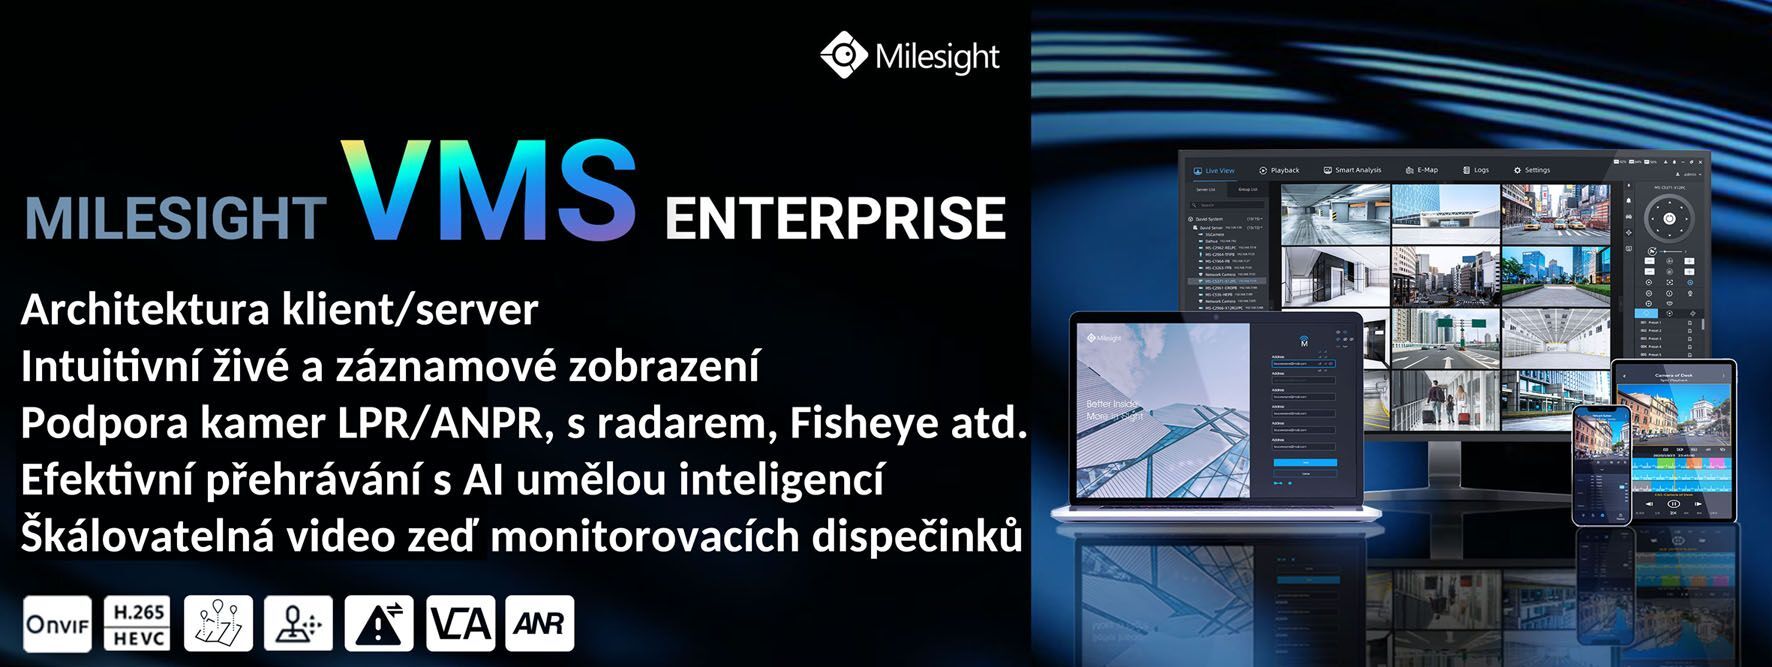 MS-MC-001 1CH Software VMS Enterprise